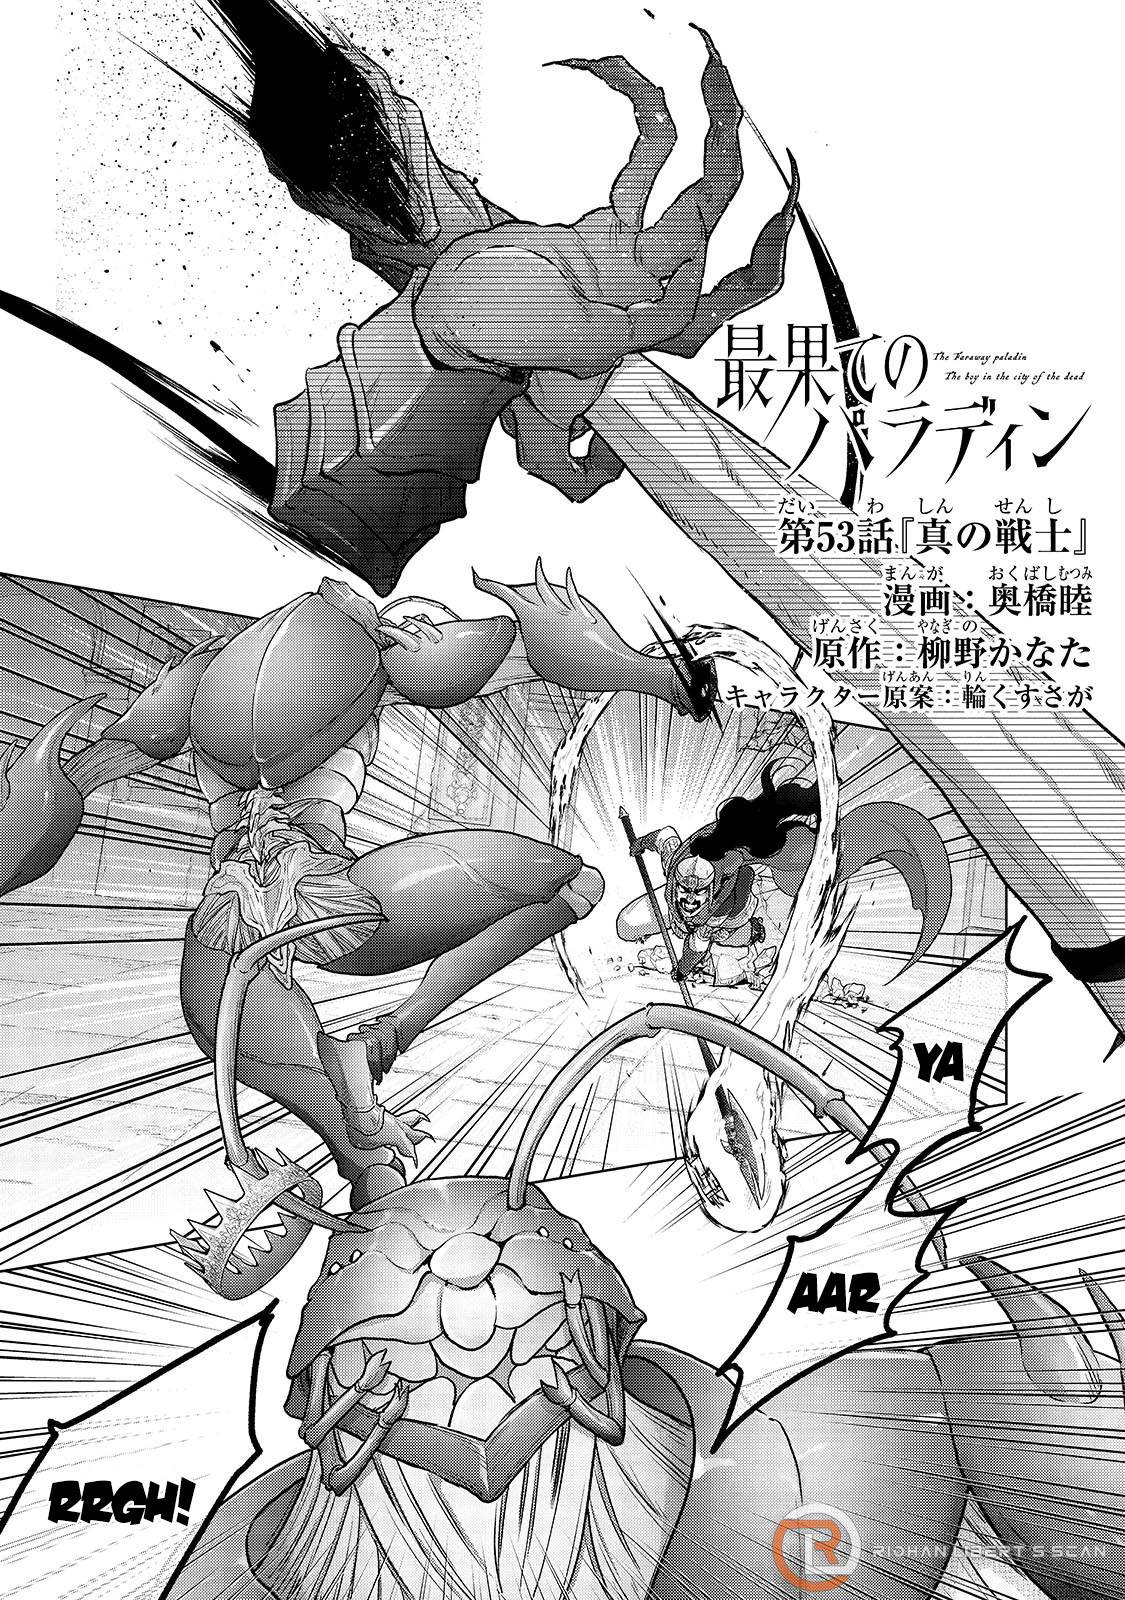 Read Saihate no Paladin Manga English [New Chapters] Online Free -  MangaClash